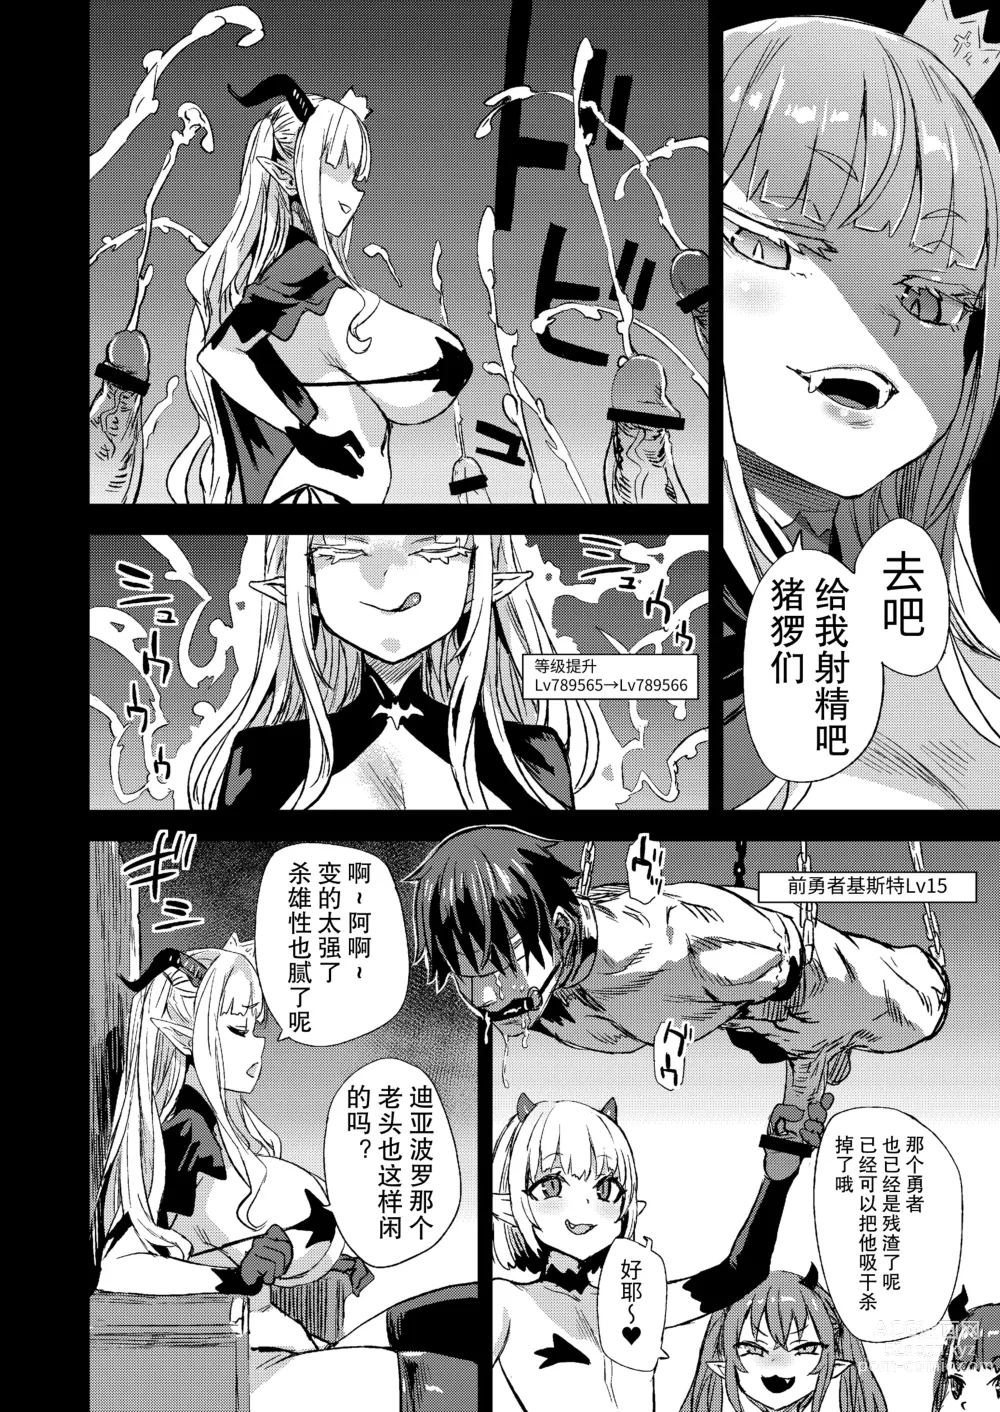 Page 6 of doujinshi Succubus Joou vs Zako Goblin - Victim Girls R